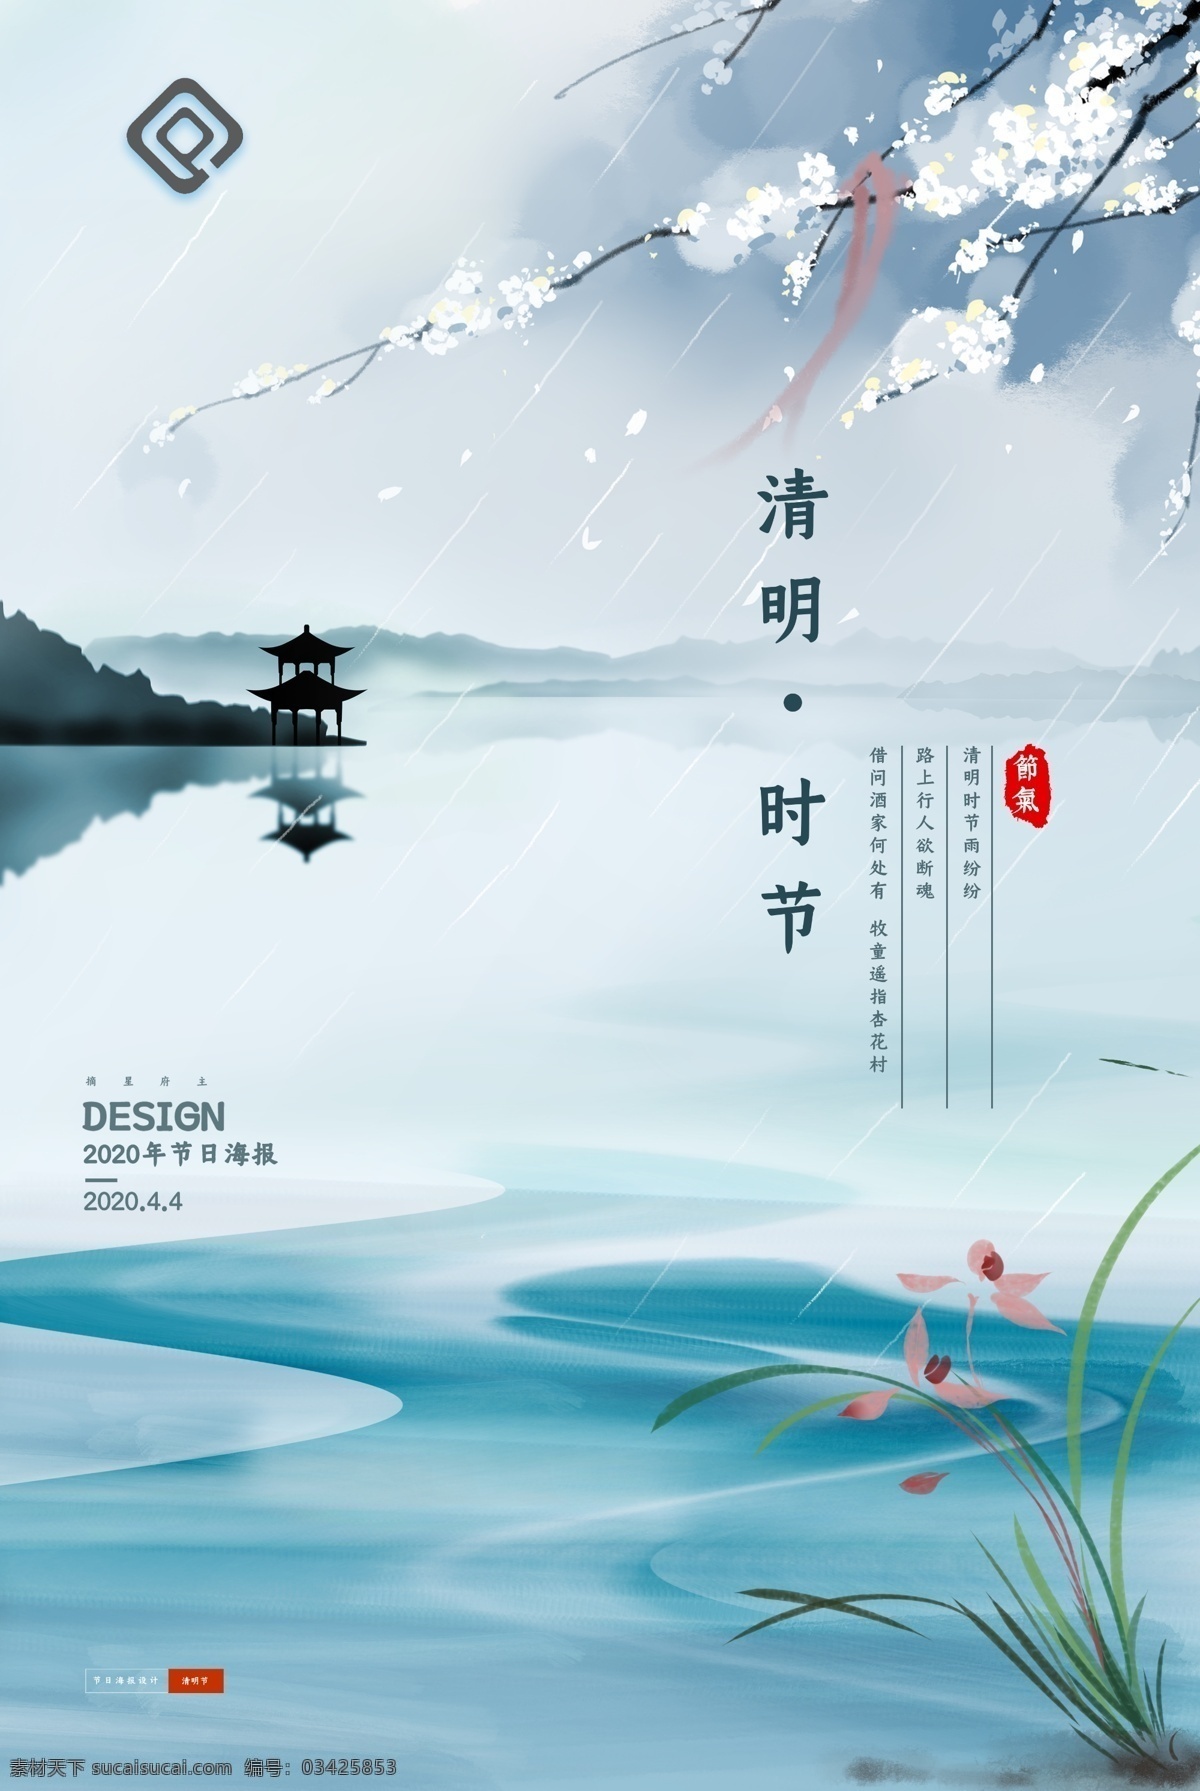 清明节 中国 风 海报 中国风 清明节海报 中国风海报 设计海报 展板设计 设计展板